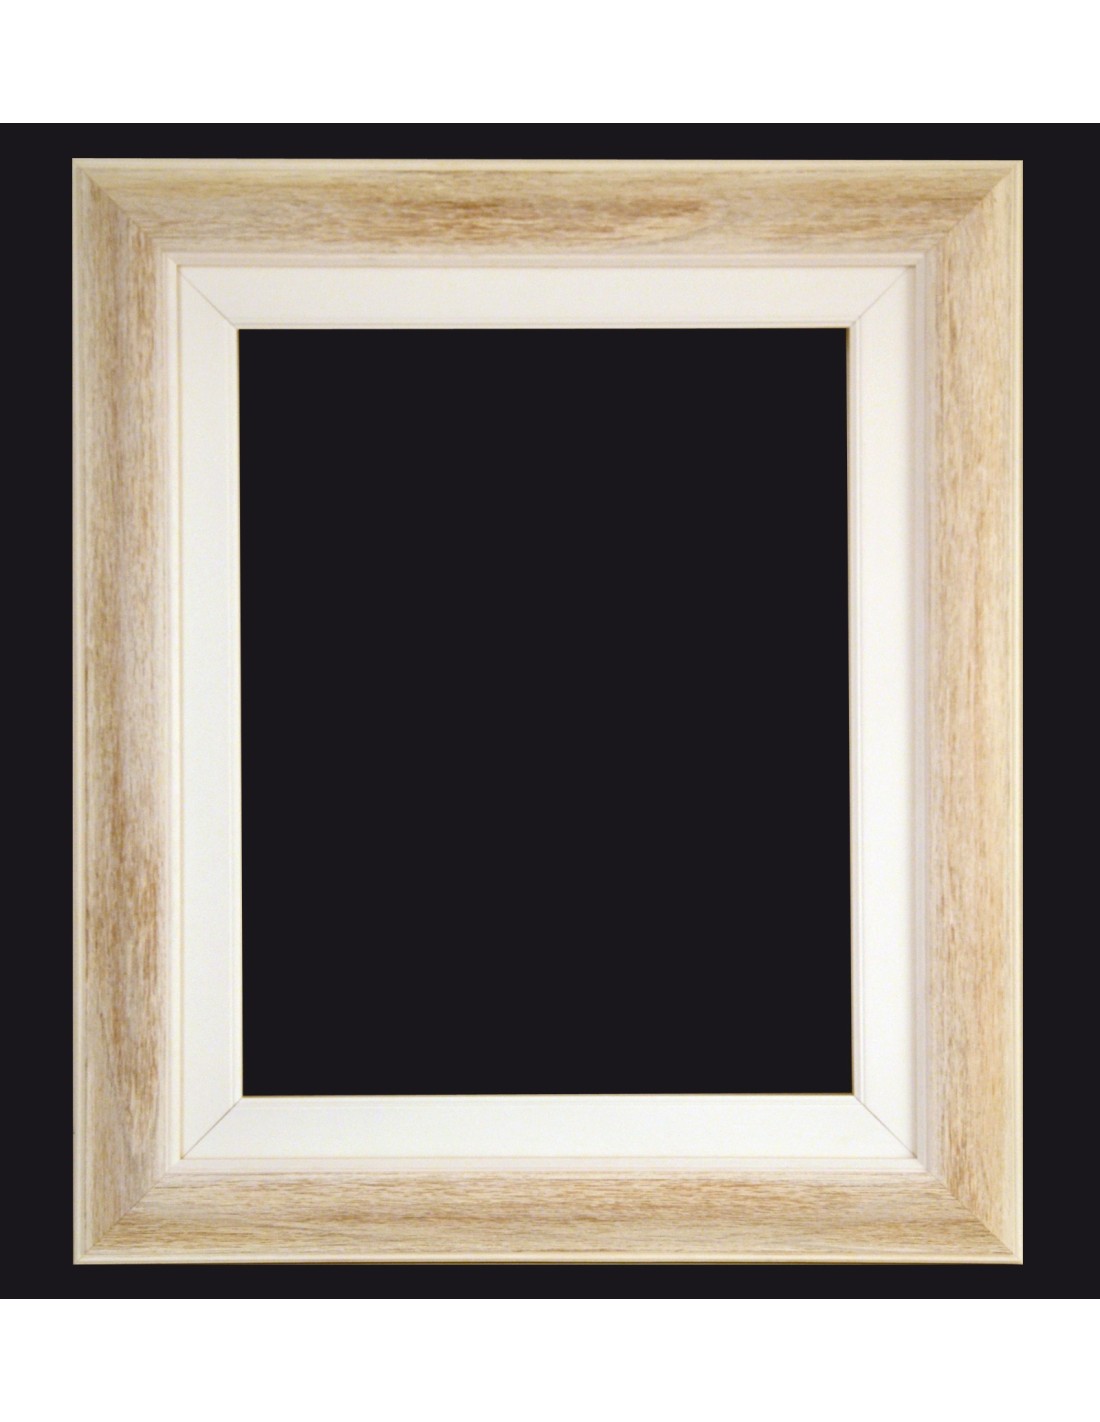 Cornice Clapton, Quadrata, Dimensioni: 28 x 28 x 2 cm, Per immagini da  24,4 x 24,4 cm, Con passepartout per foto da 17,8 x 17,8 cm, Frontale in  vetro, Da appoggiare o appendere alla parete